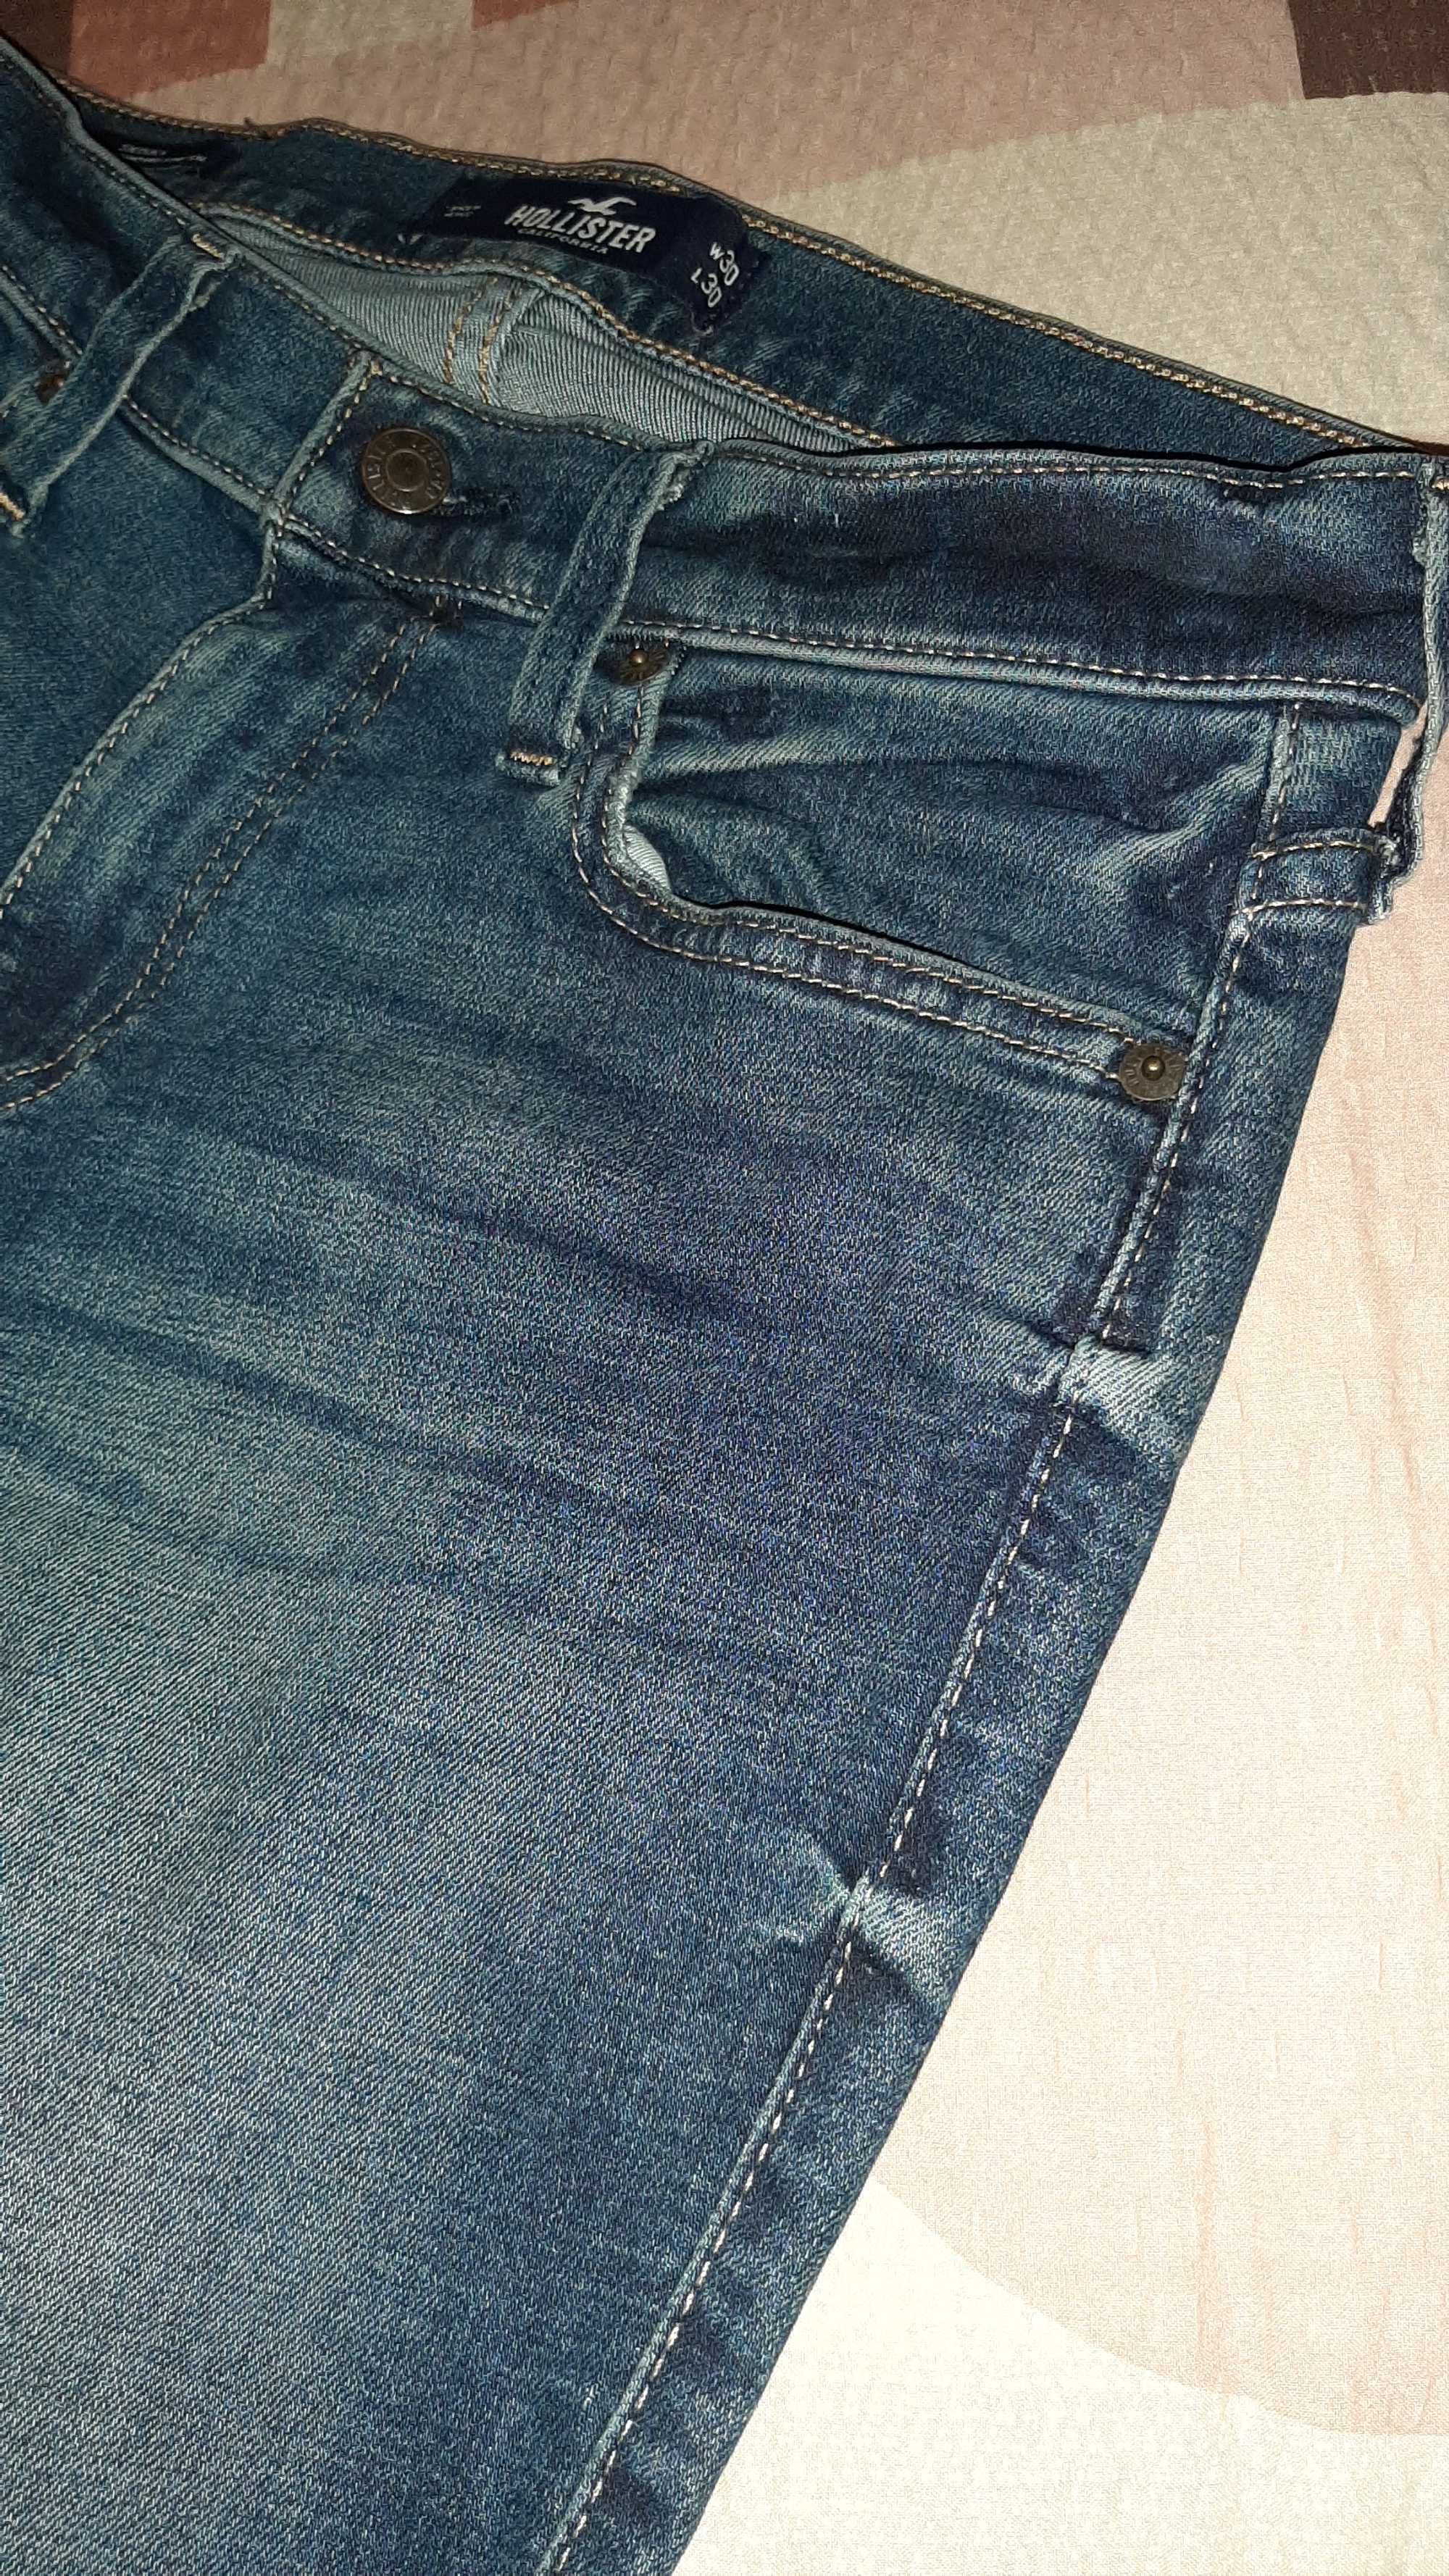 Spodnie jeans Hollister nowe rozm. 30/30, rozm. S